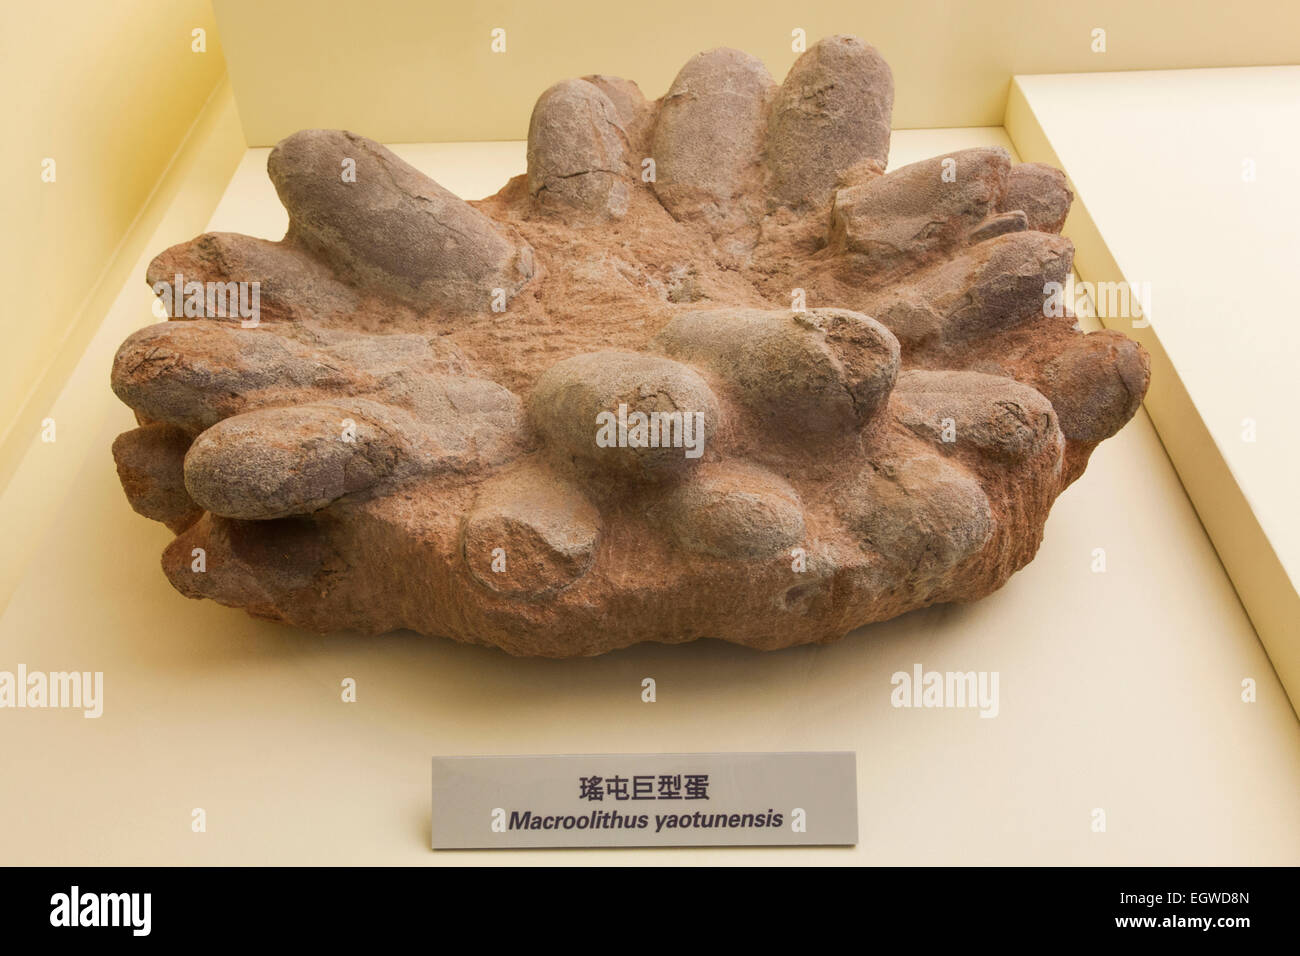 China, fósiles de huevos de dinosaurio Foto de stock